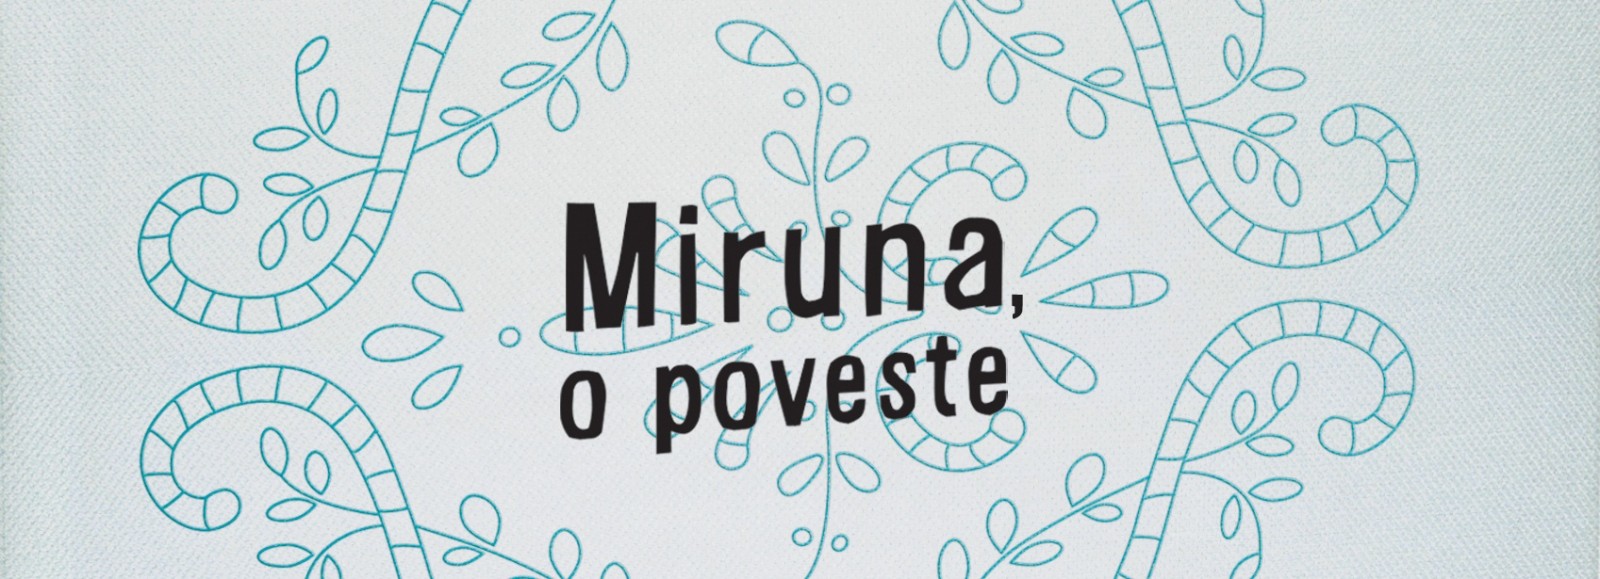 “Miruna, o poveste” de Bogdan Suceavă,  tradusă în engleză la Twisted Spoon Press